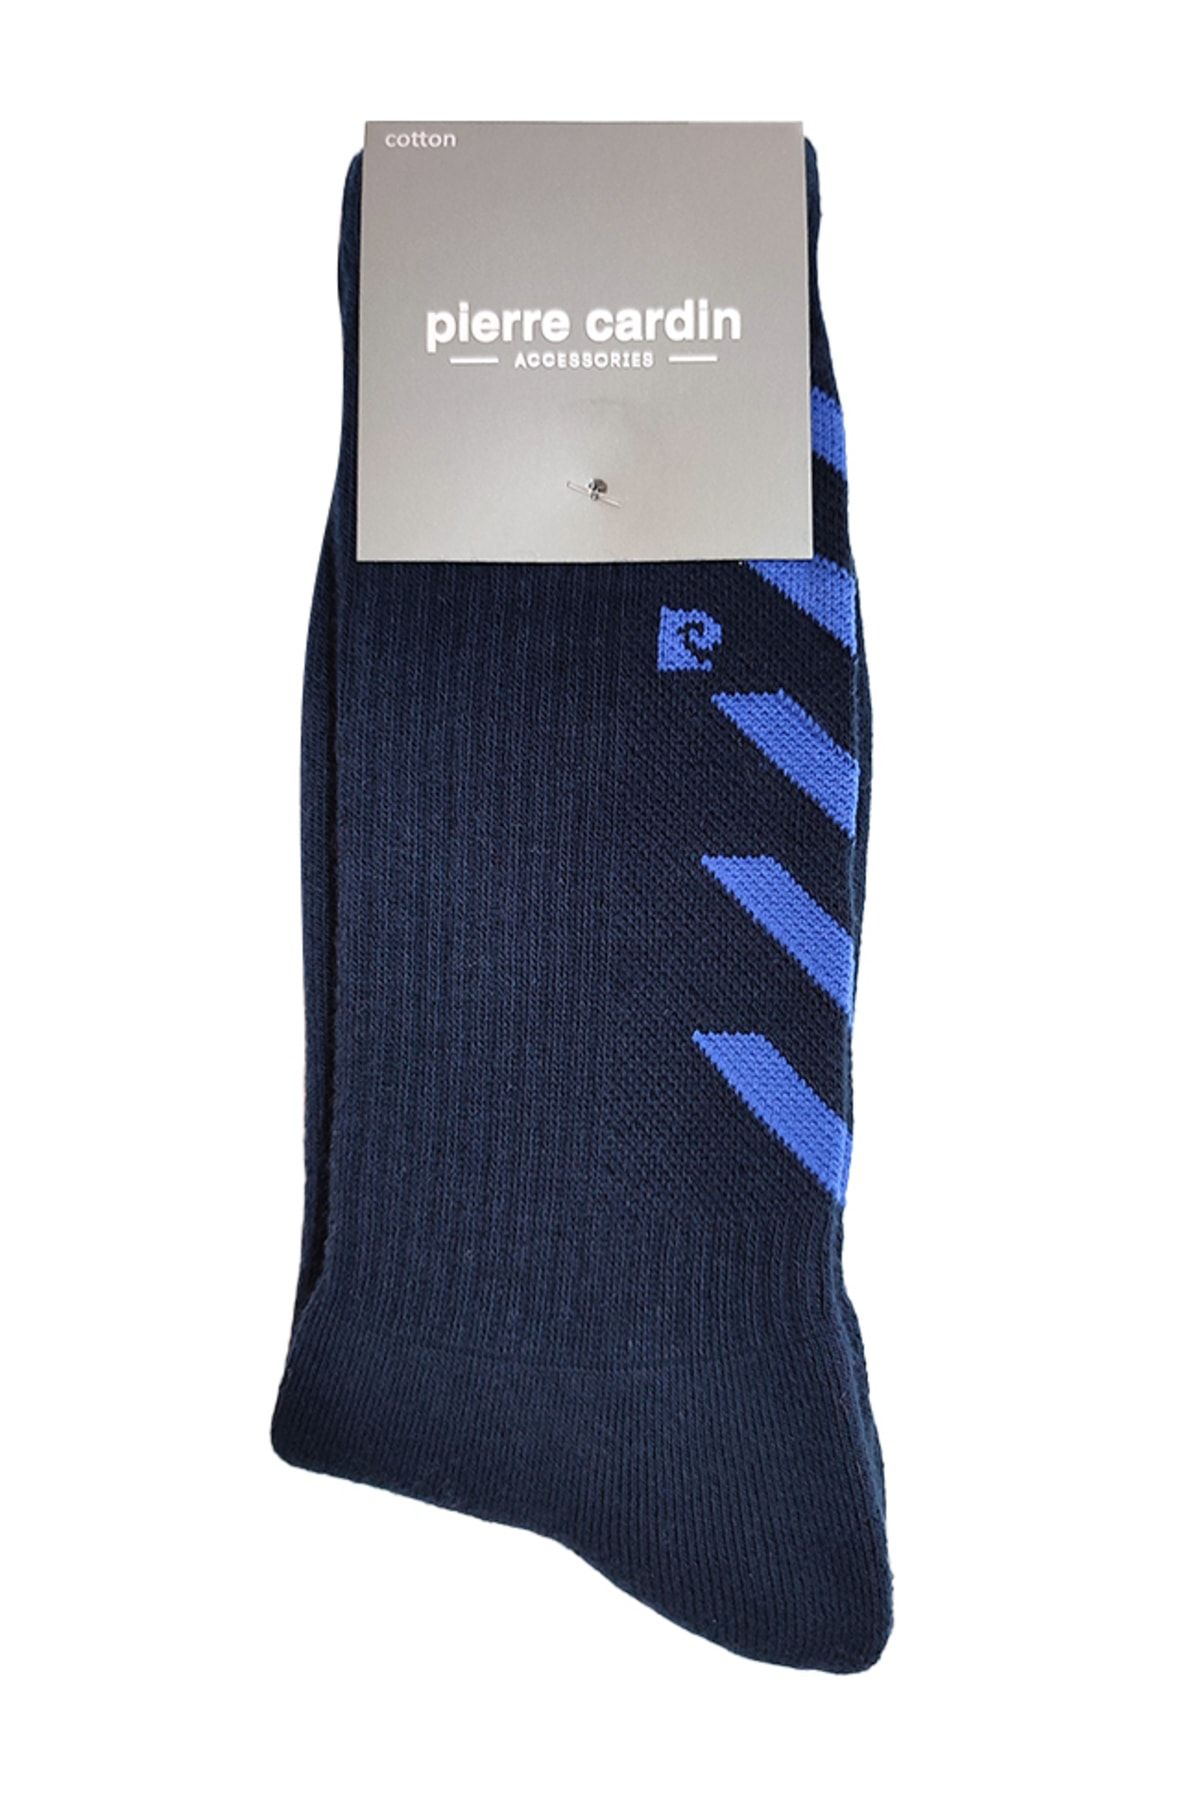 Pierre Cardin Uzun Tenis Erkek Çorap